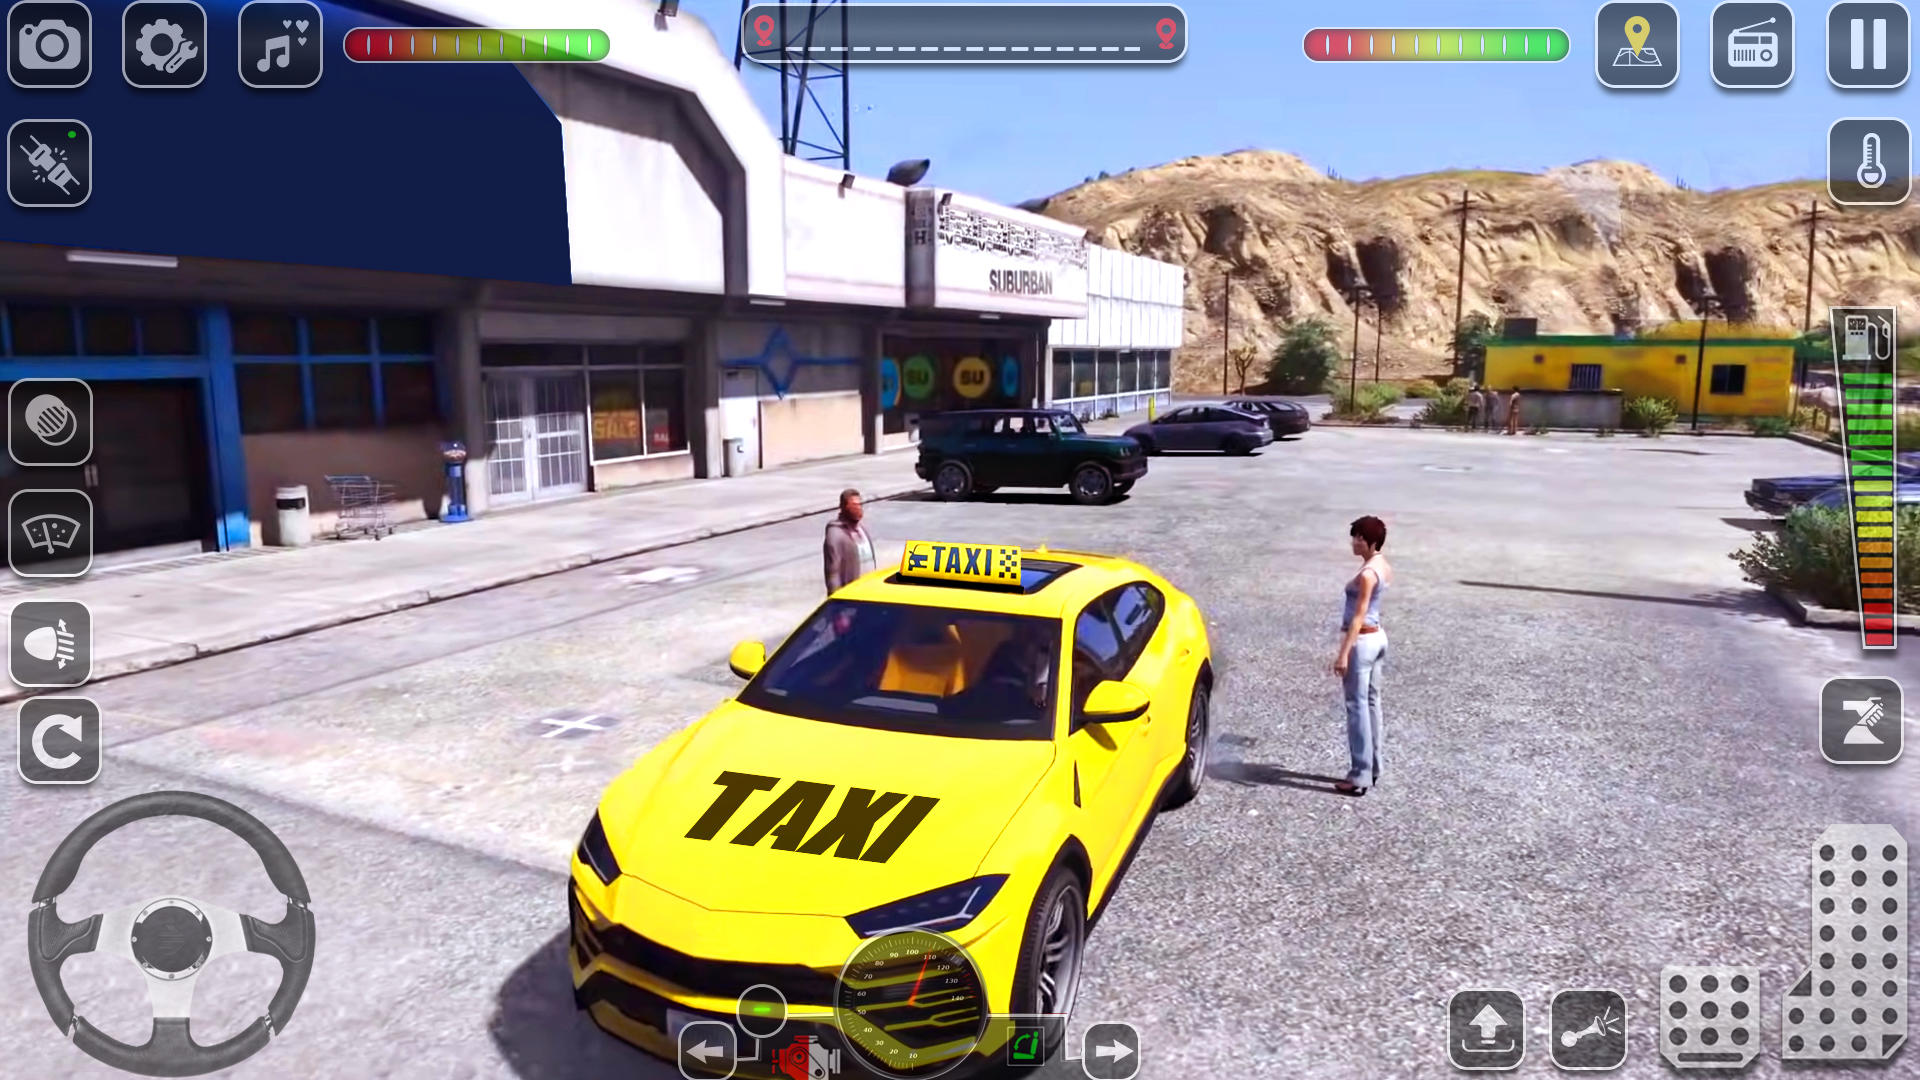 Screenshot 1 of เกมแท็กซี่ในสหรัฐอเมริกา: เกมแท็กซี่ 2022 0.1